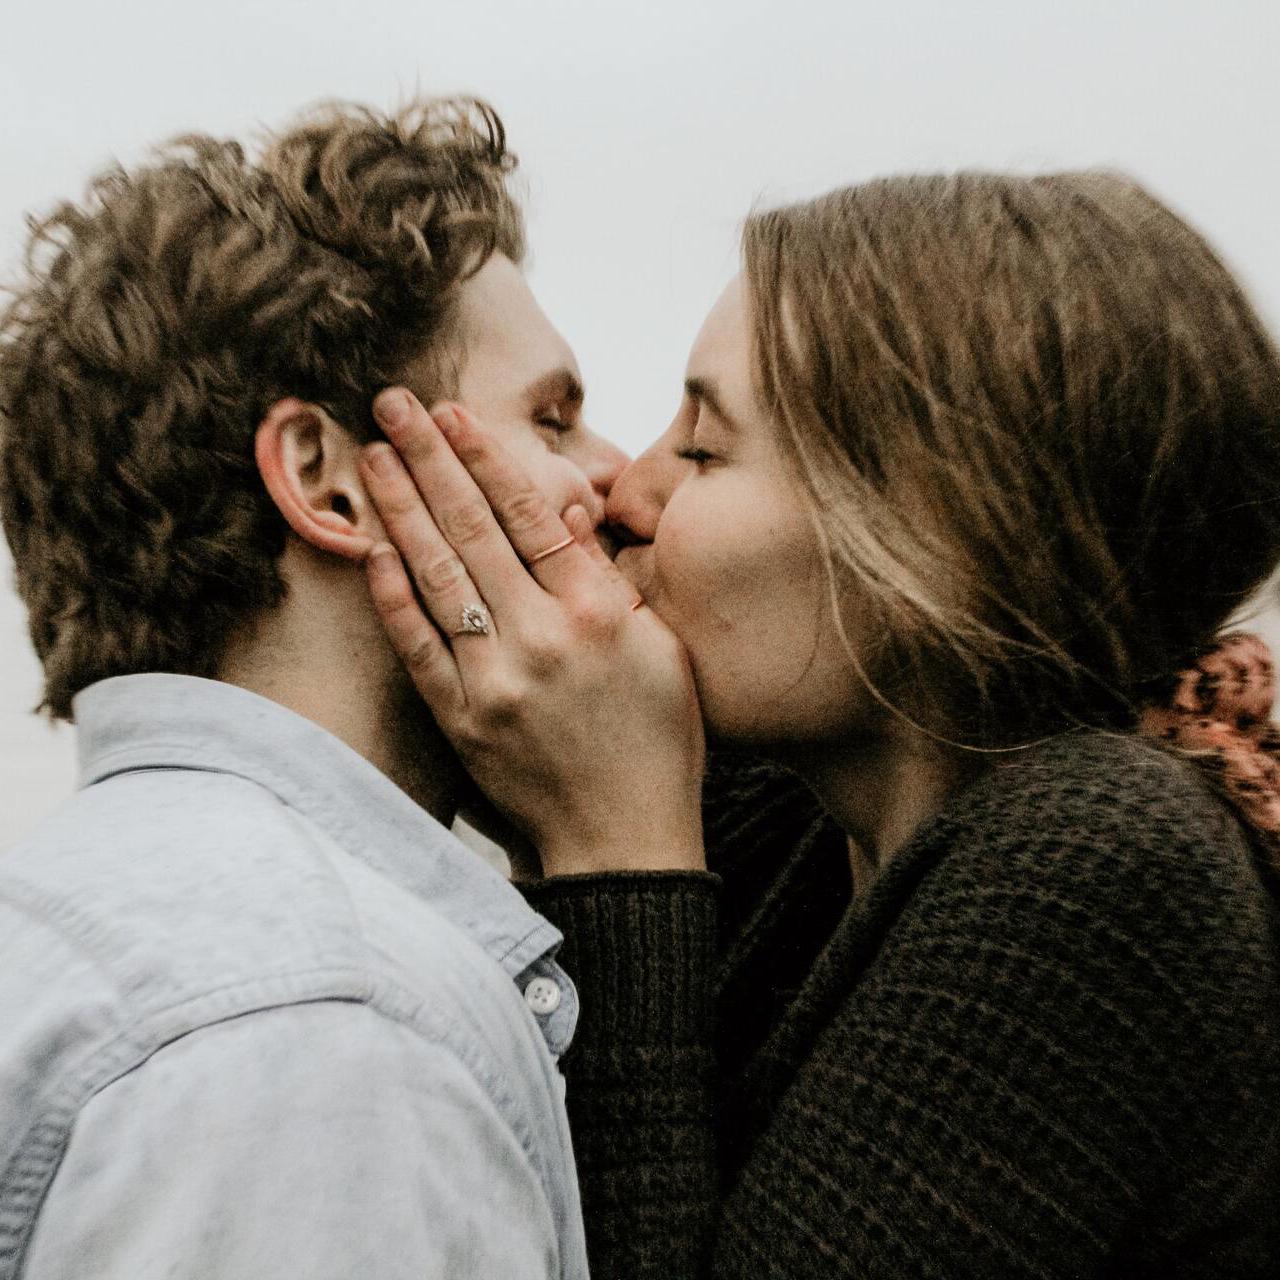 Фото Lesbian Kiss, более 94 качественных бесплатных стоковых фото